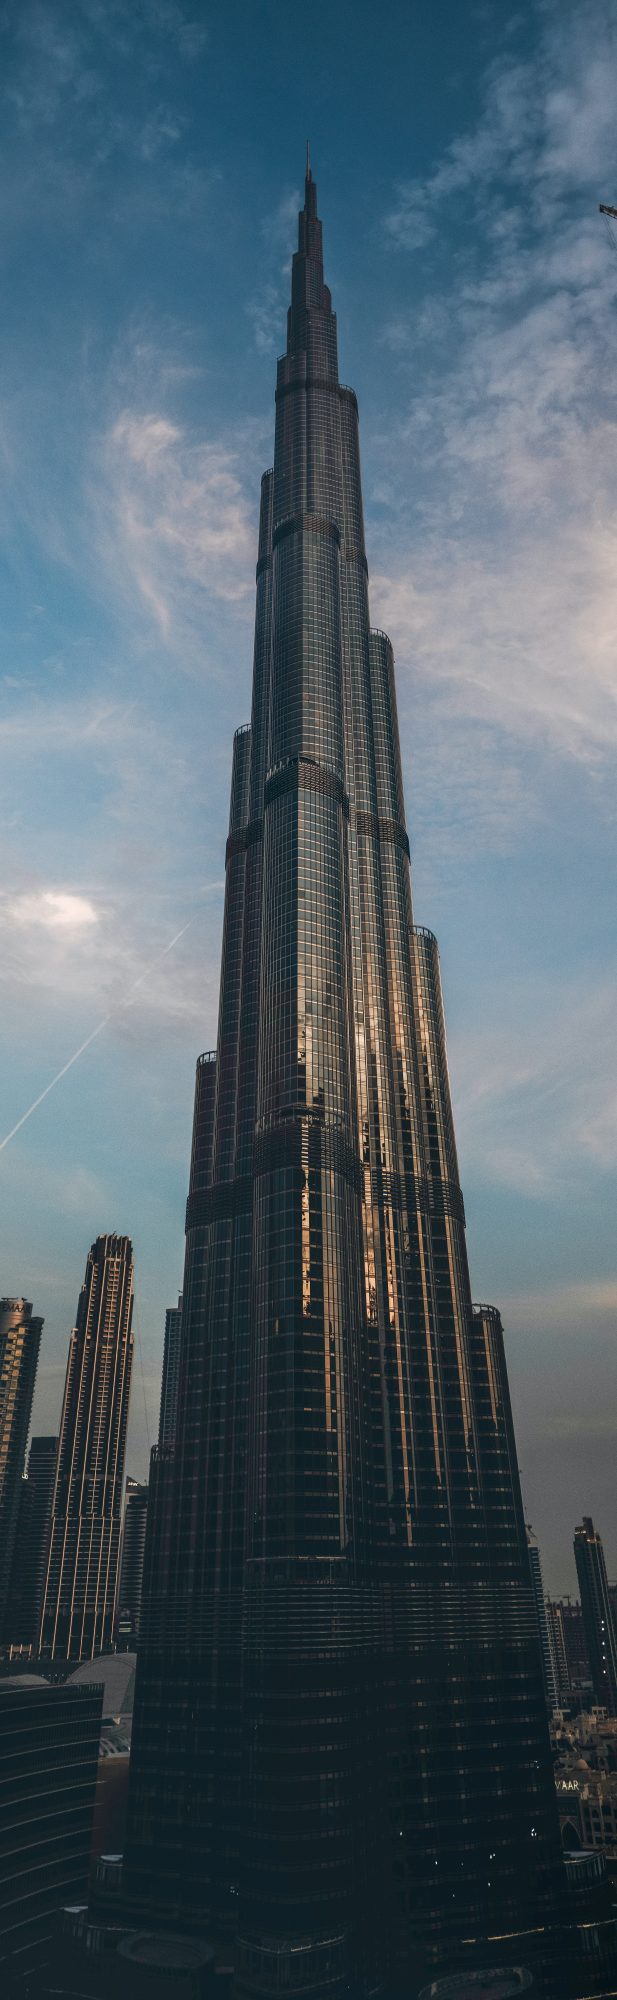 Burj Khalifa - Dubaï